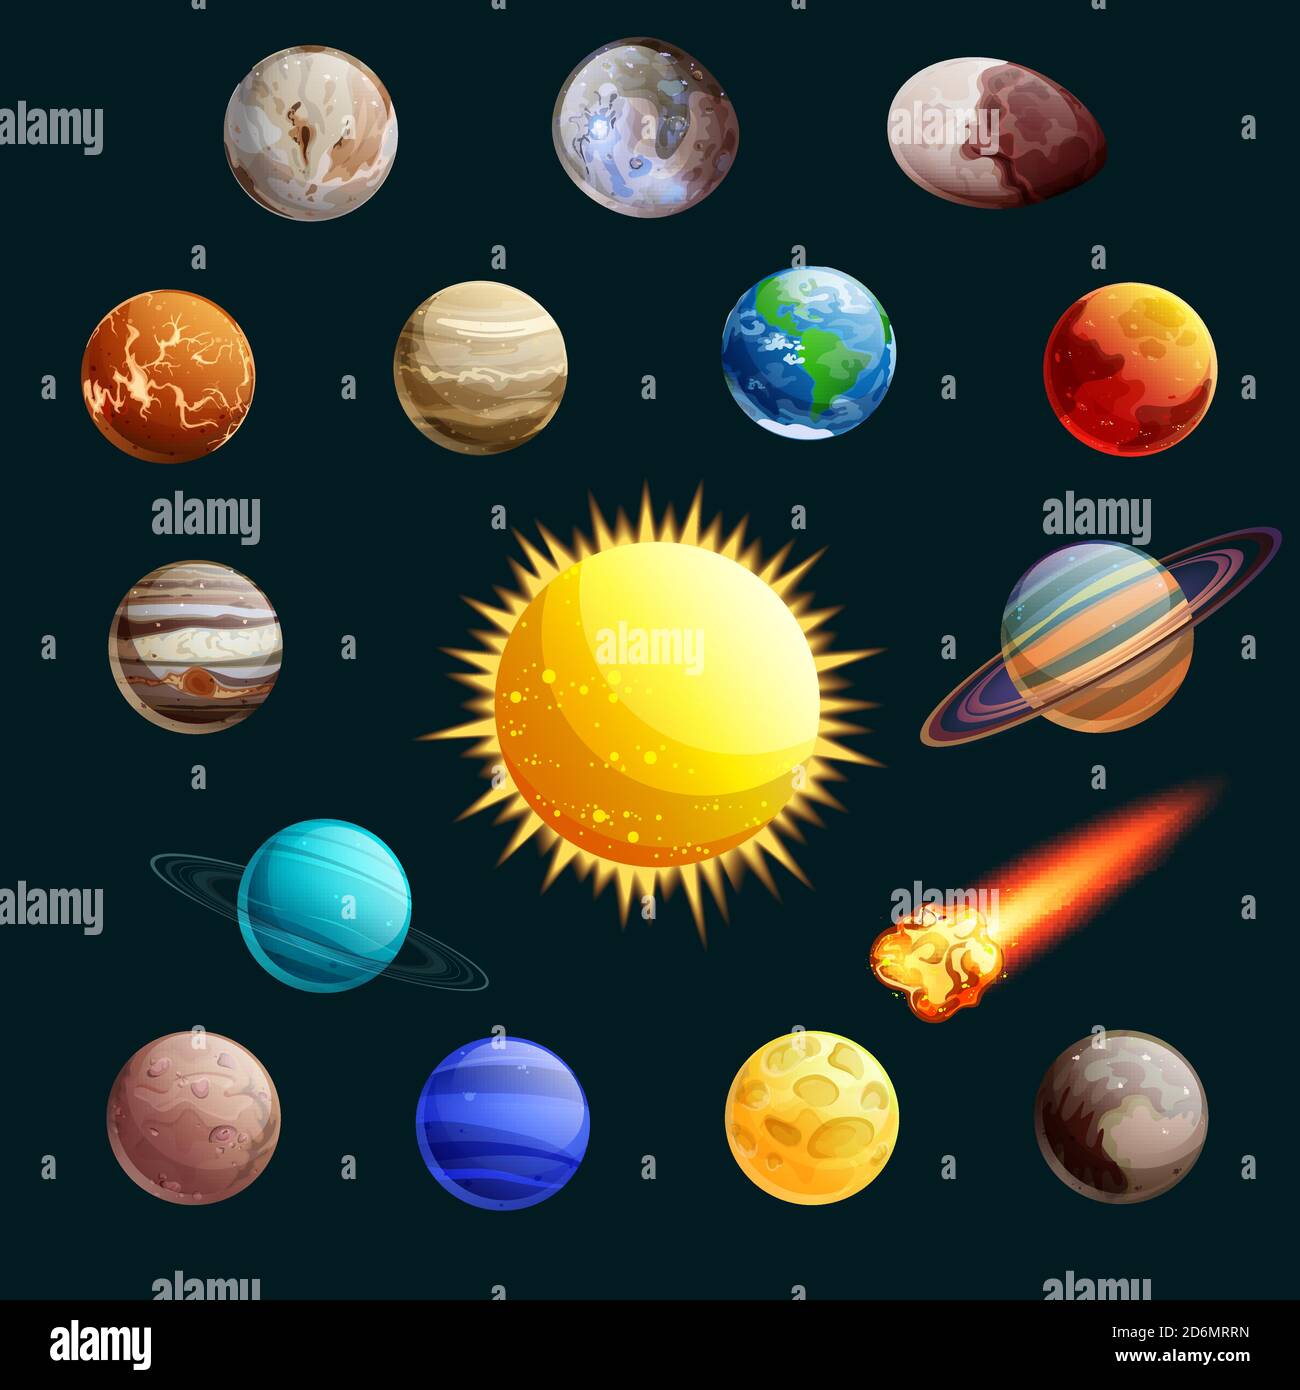 Illustrazione vettoriale del sistema solare. Sole, pianeti, cartoni animati sateliti icone spazio ed elementi di design. Illustrazione Vettoriale